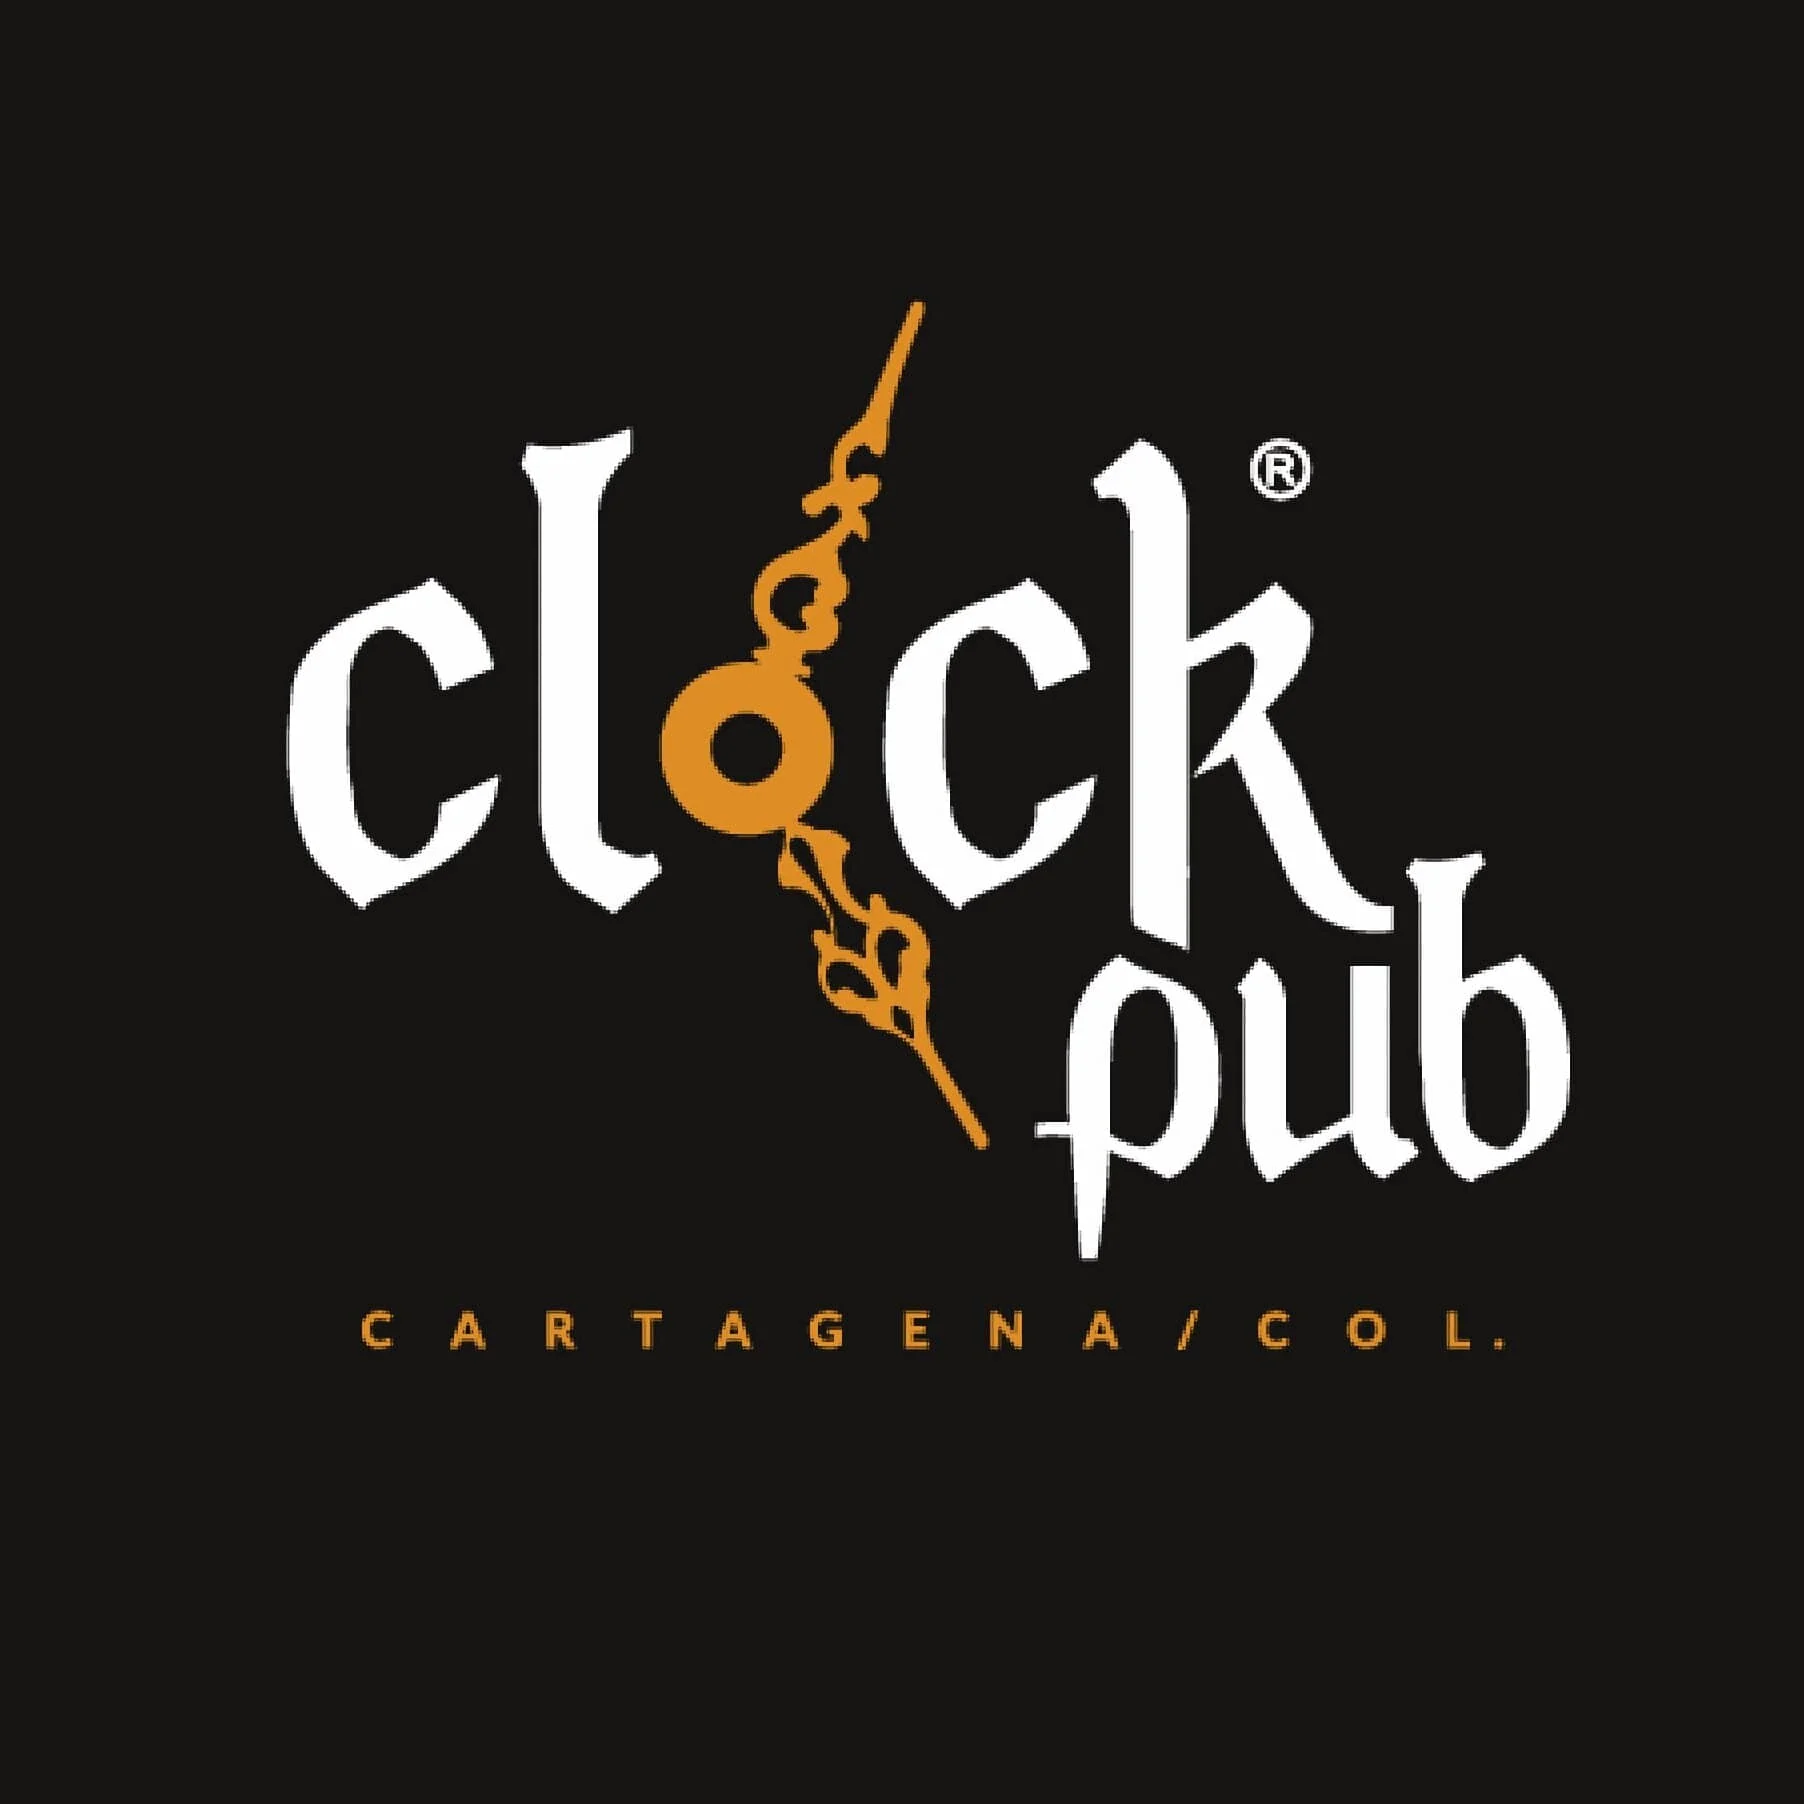 Bar-the-clock-pub-cartagena-32334